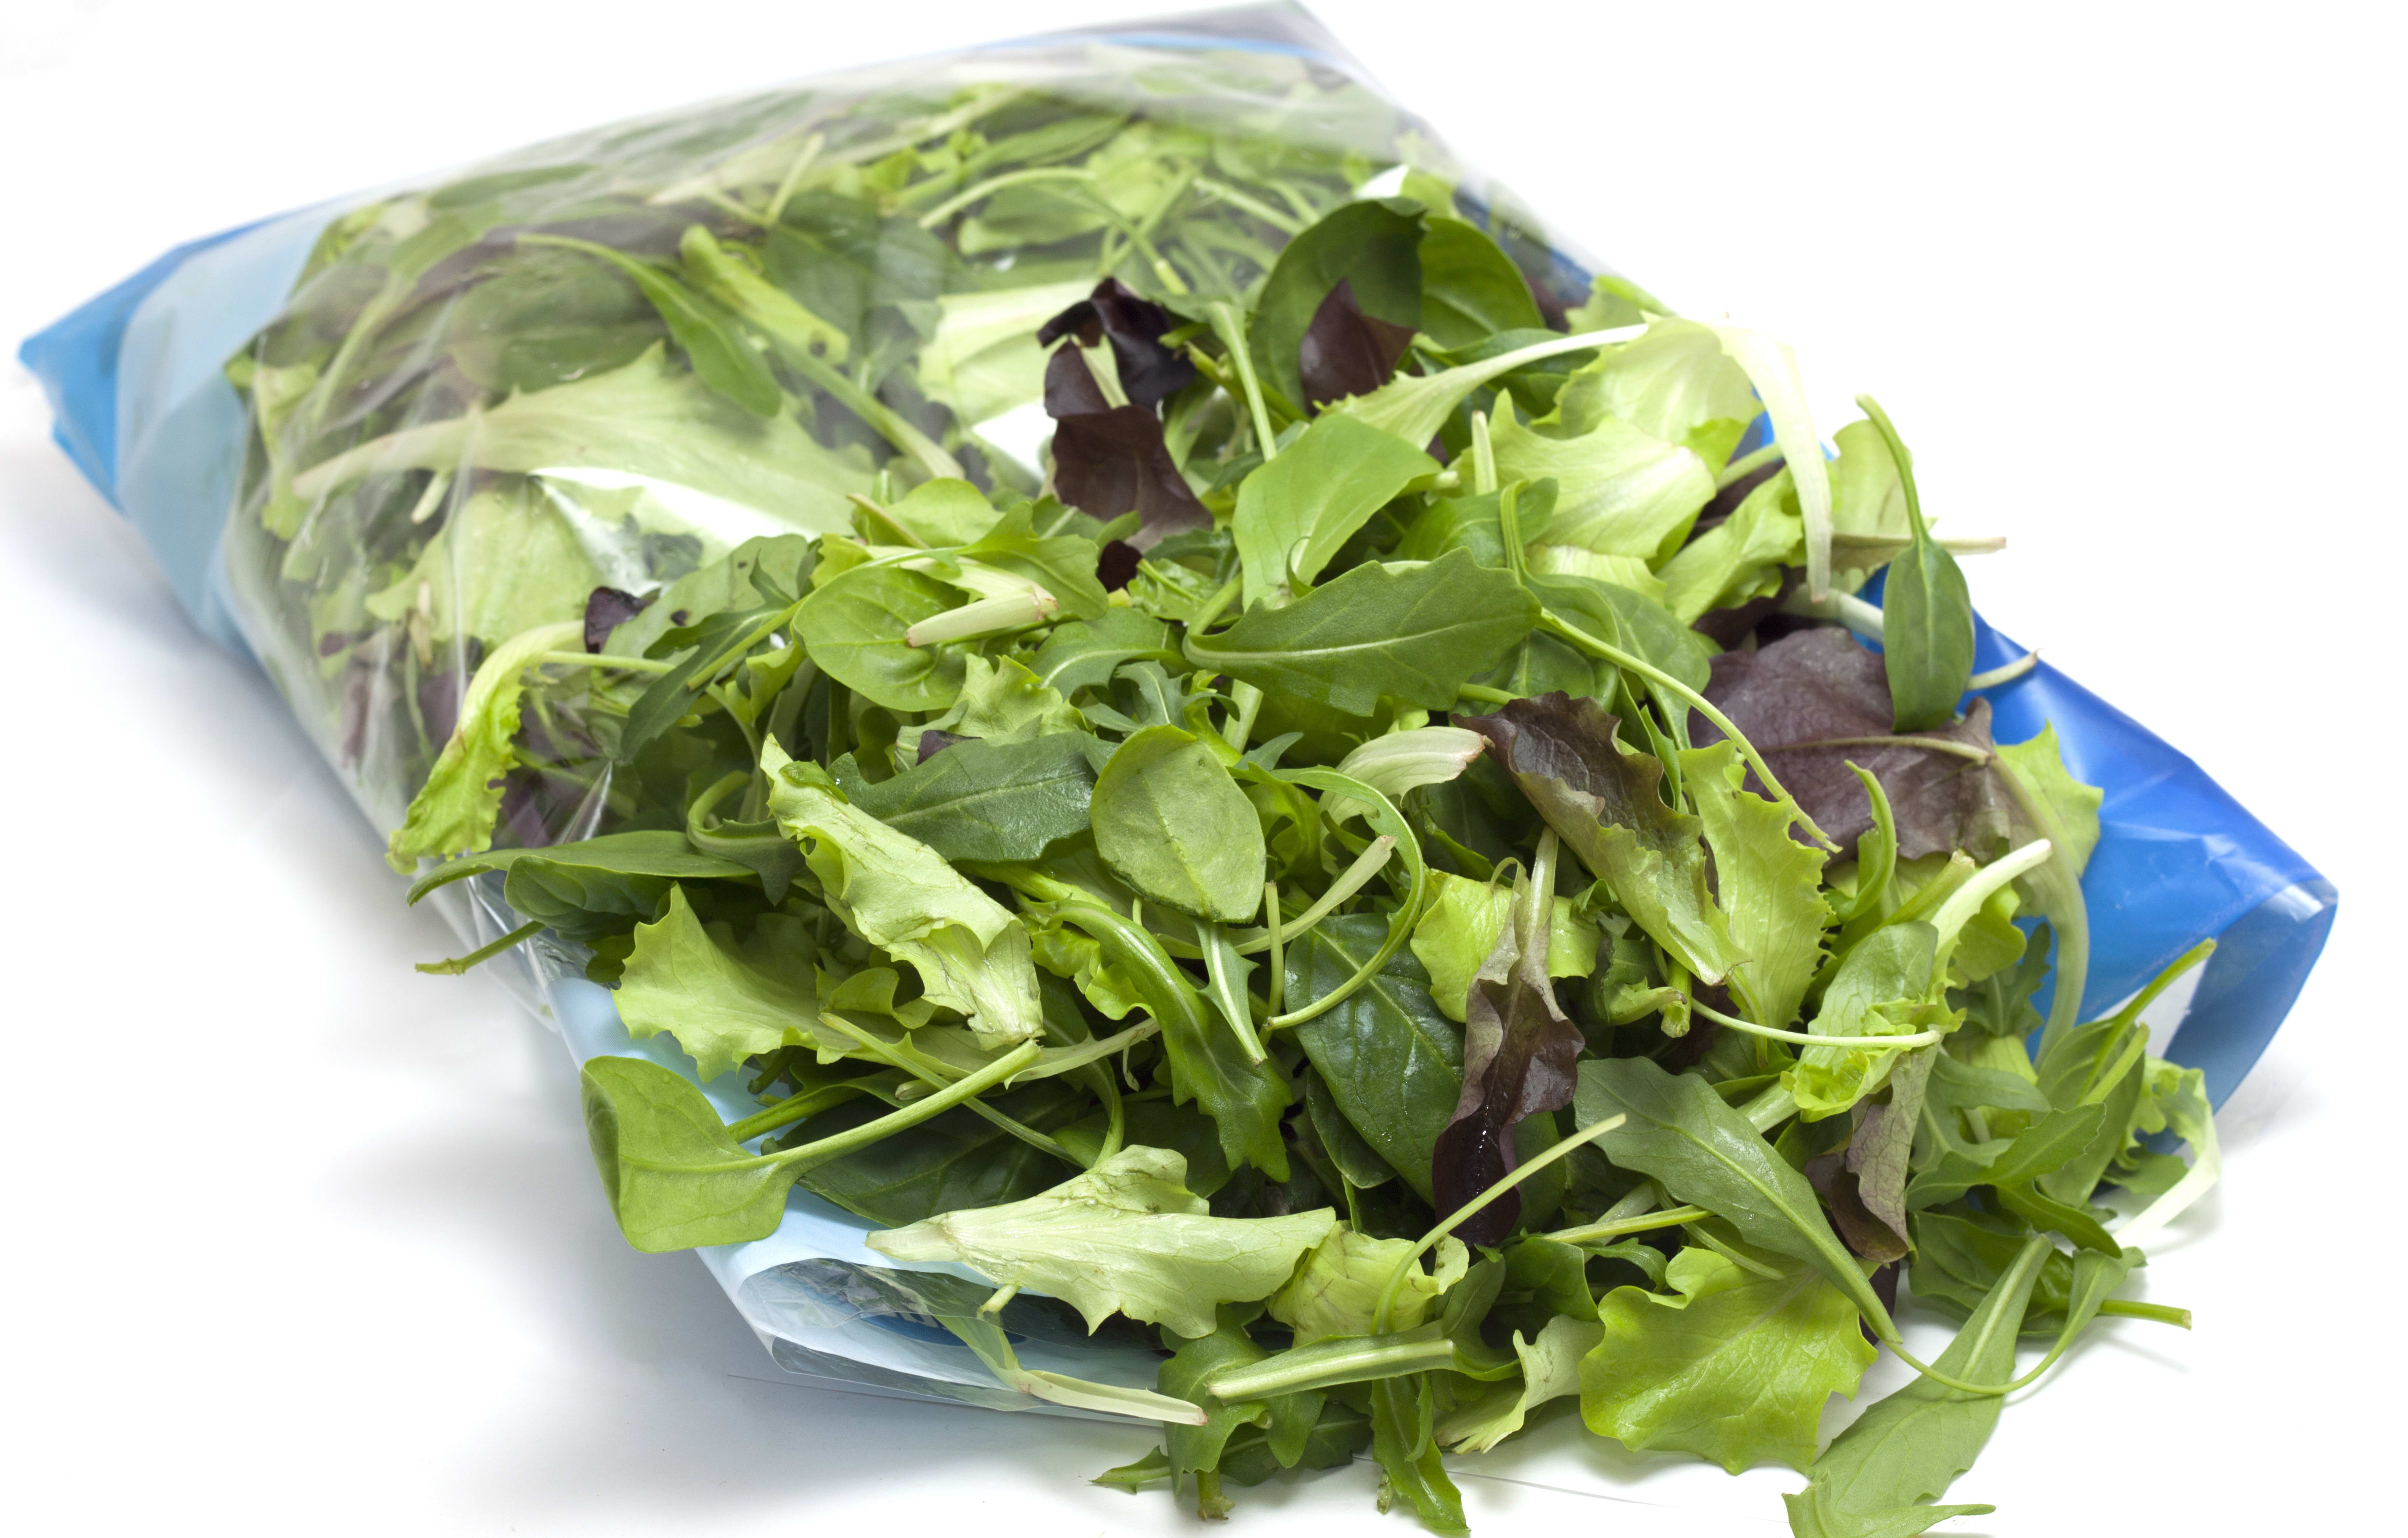 bagged salad leaves